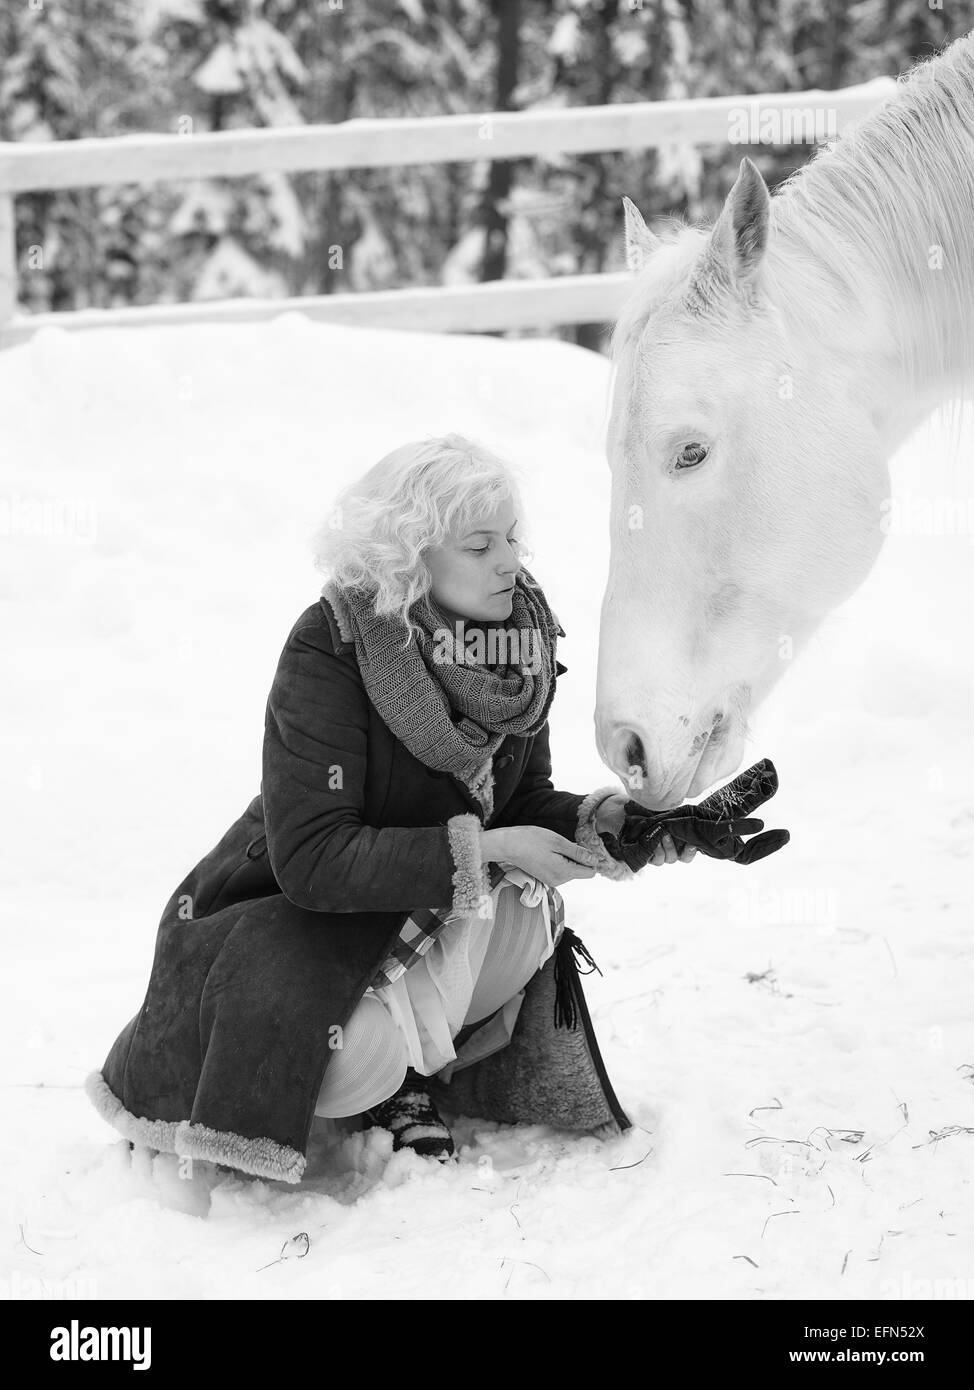 Attractive blonde femme nourrit un cheval blanc, ciel couvert journée d'hiver, image en noir et blanc Banque D'Images